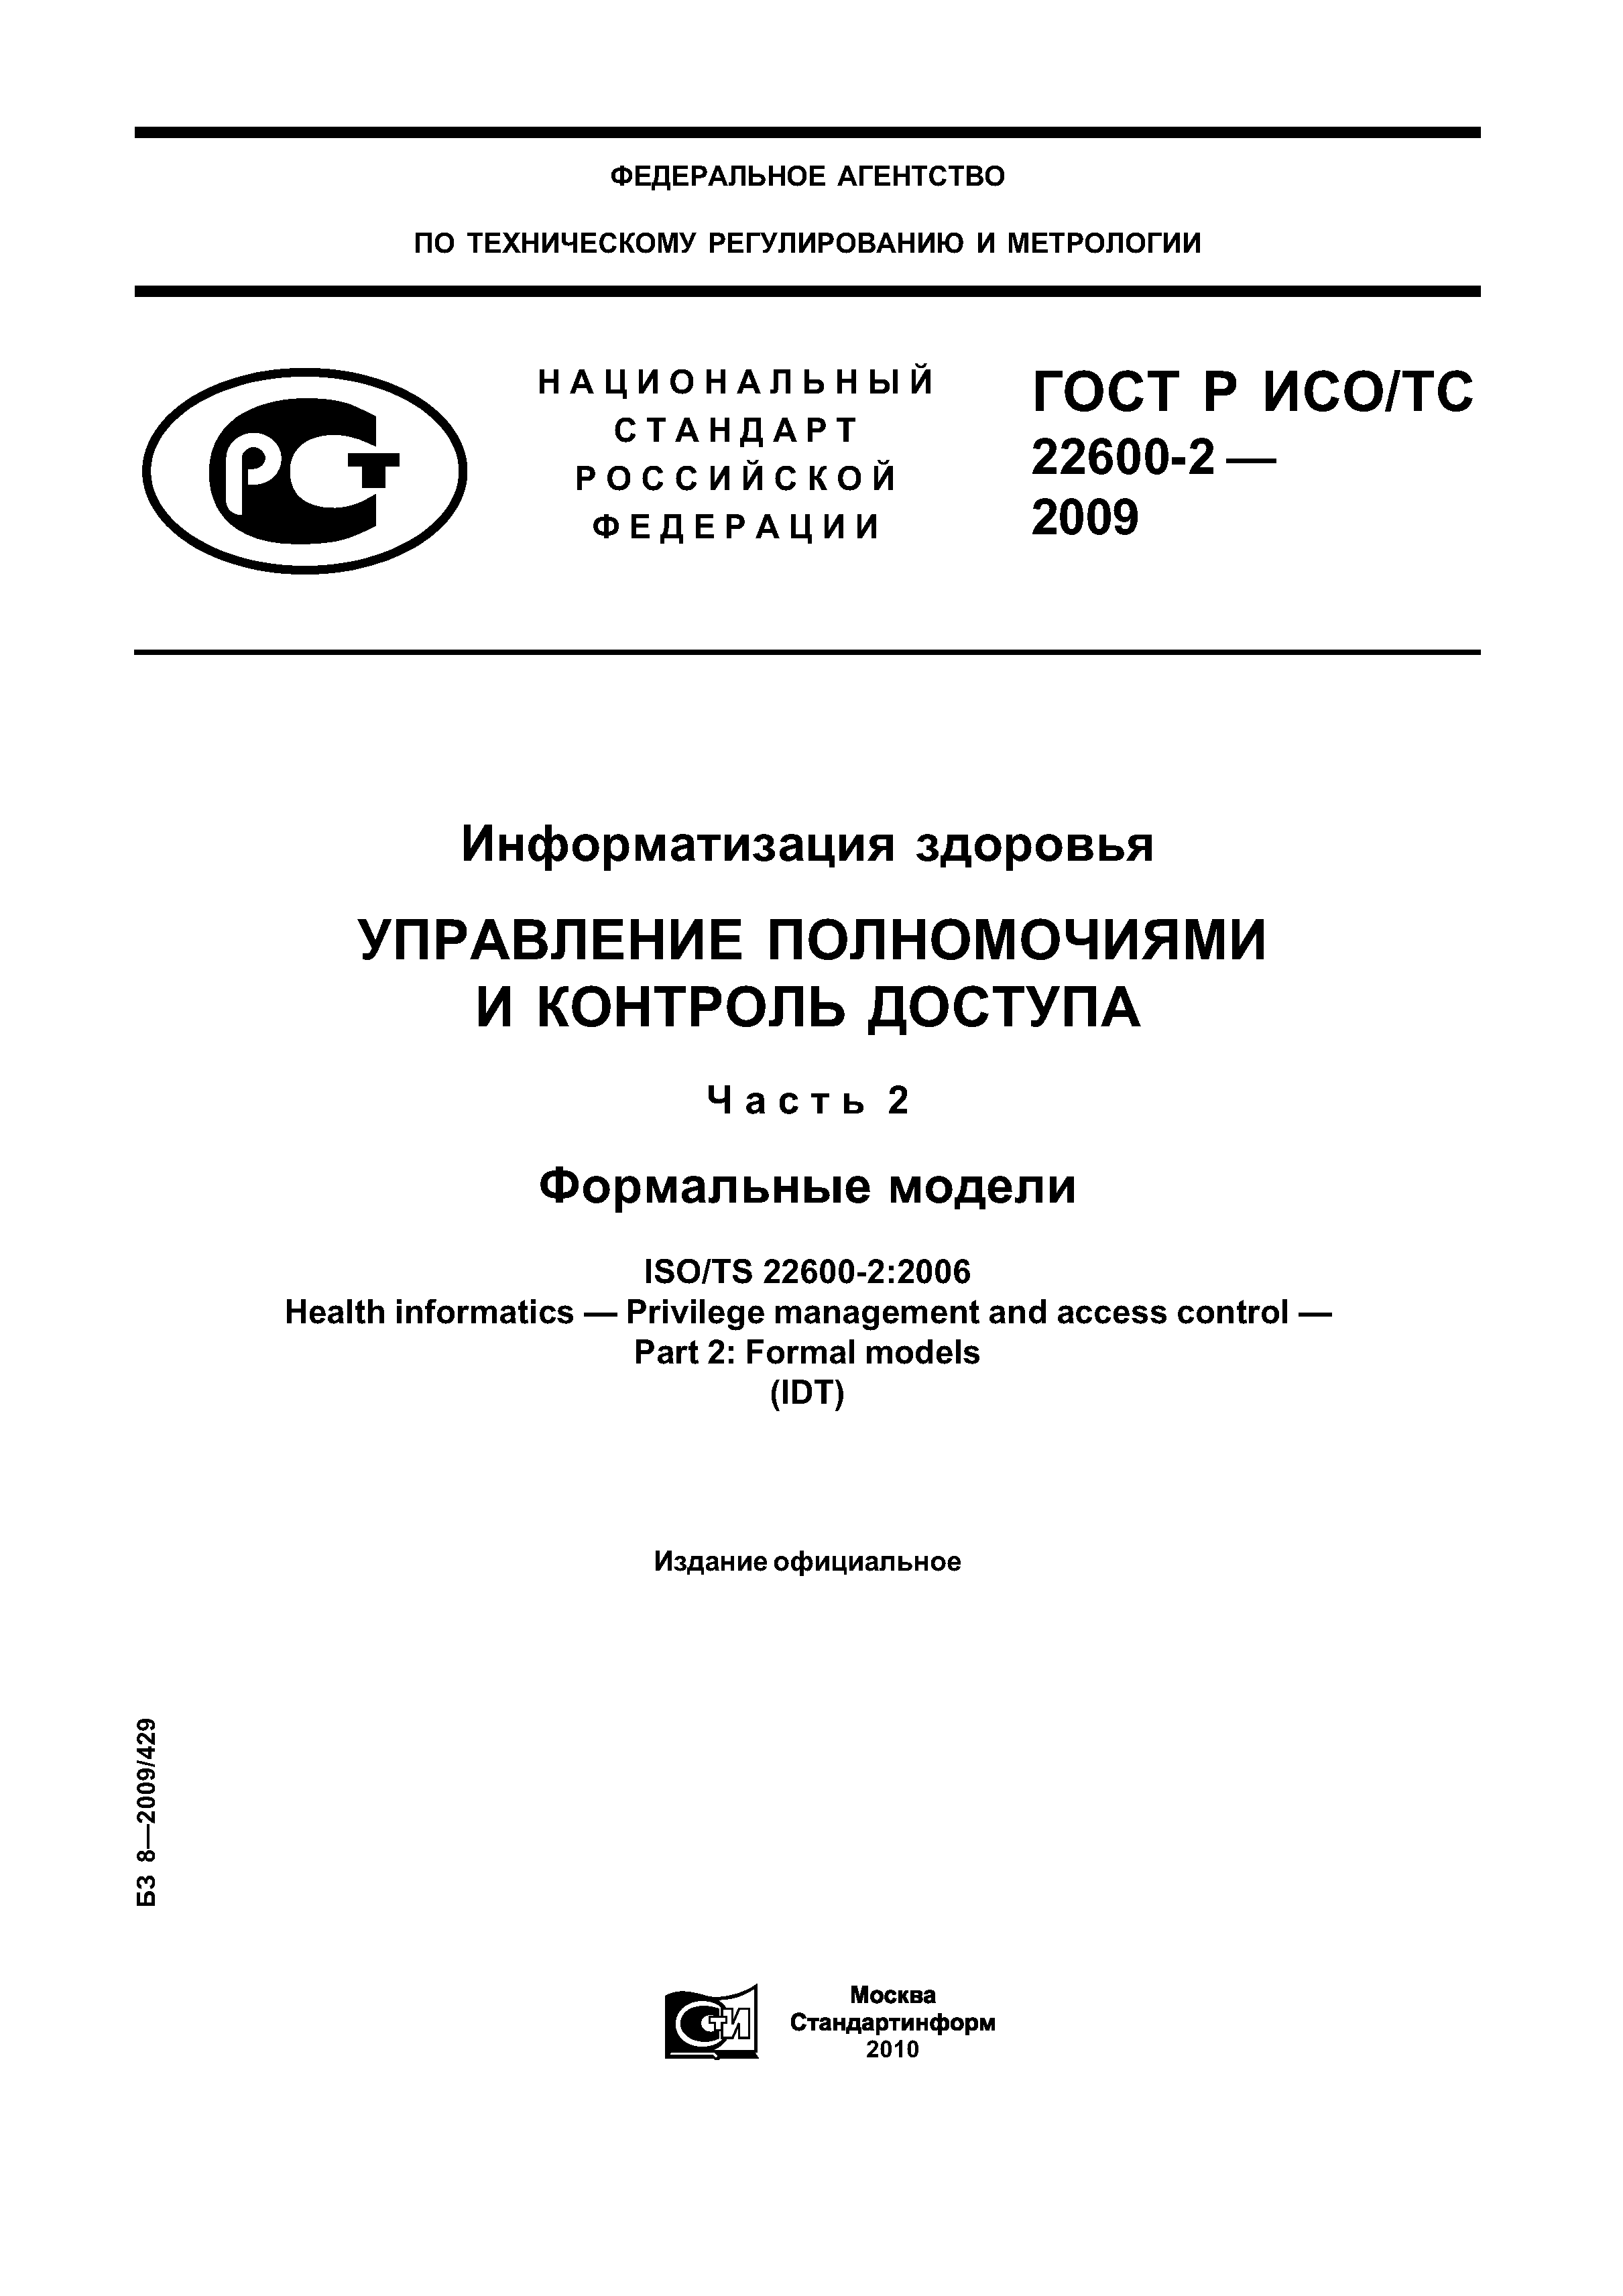 ГОСТ Р ИСО/ТС 22600-2-2009